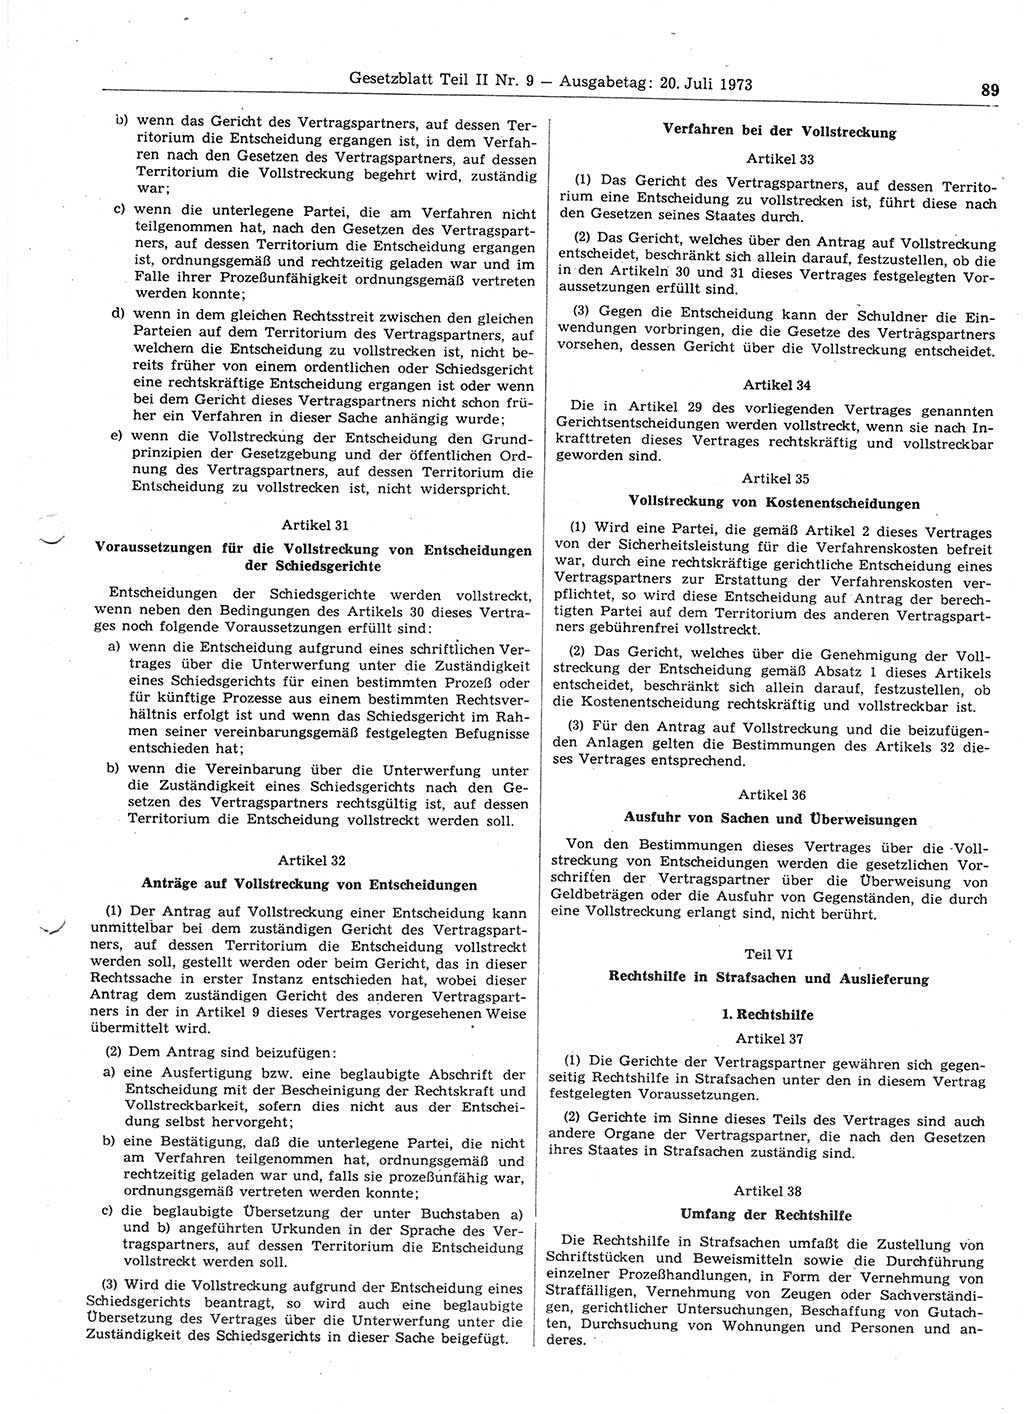 Gesetzblatt (GBl.) der Deutschen Demokratischen Republik (DDR) Teil ⅠⅠ 1973, Seite 89 (GBl. DDR ⅠⅠ 1973, S. 89)